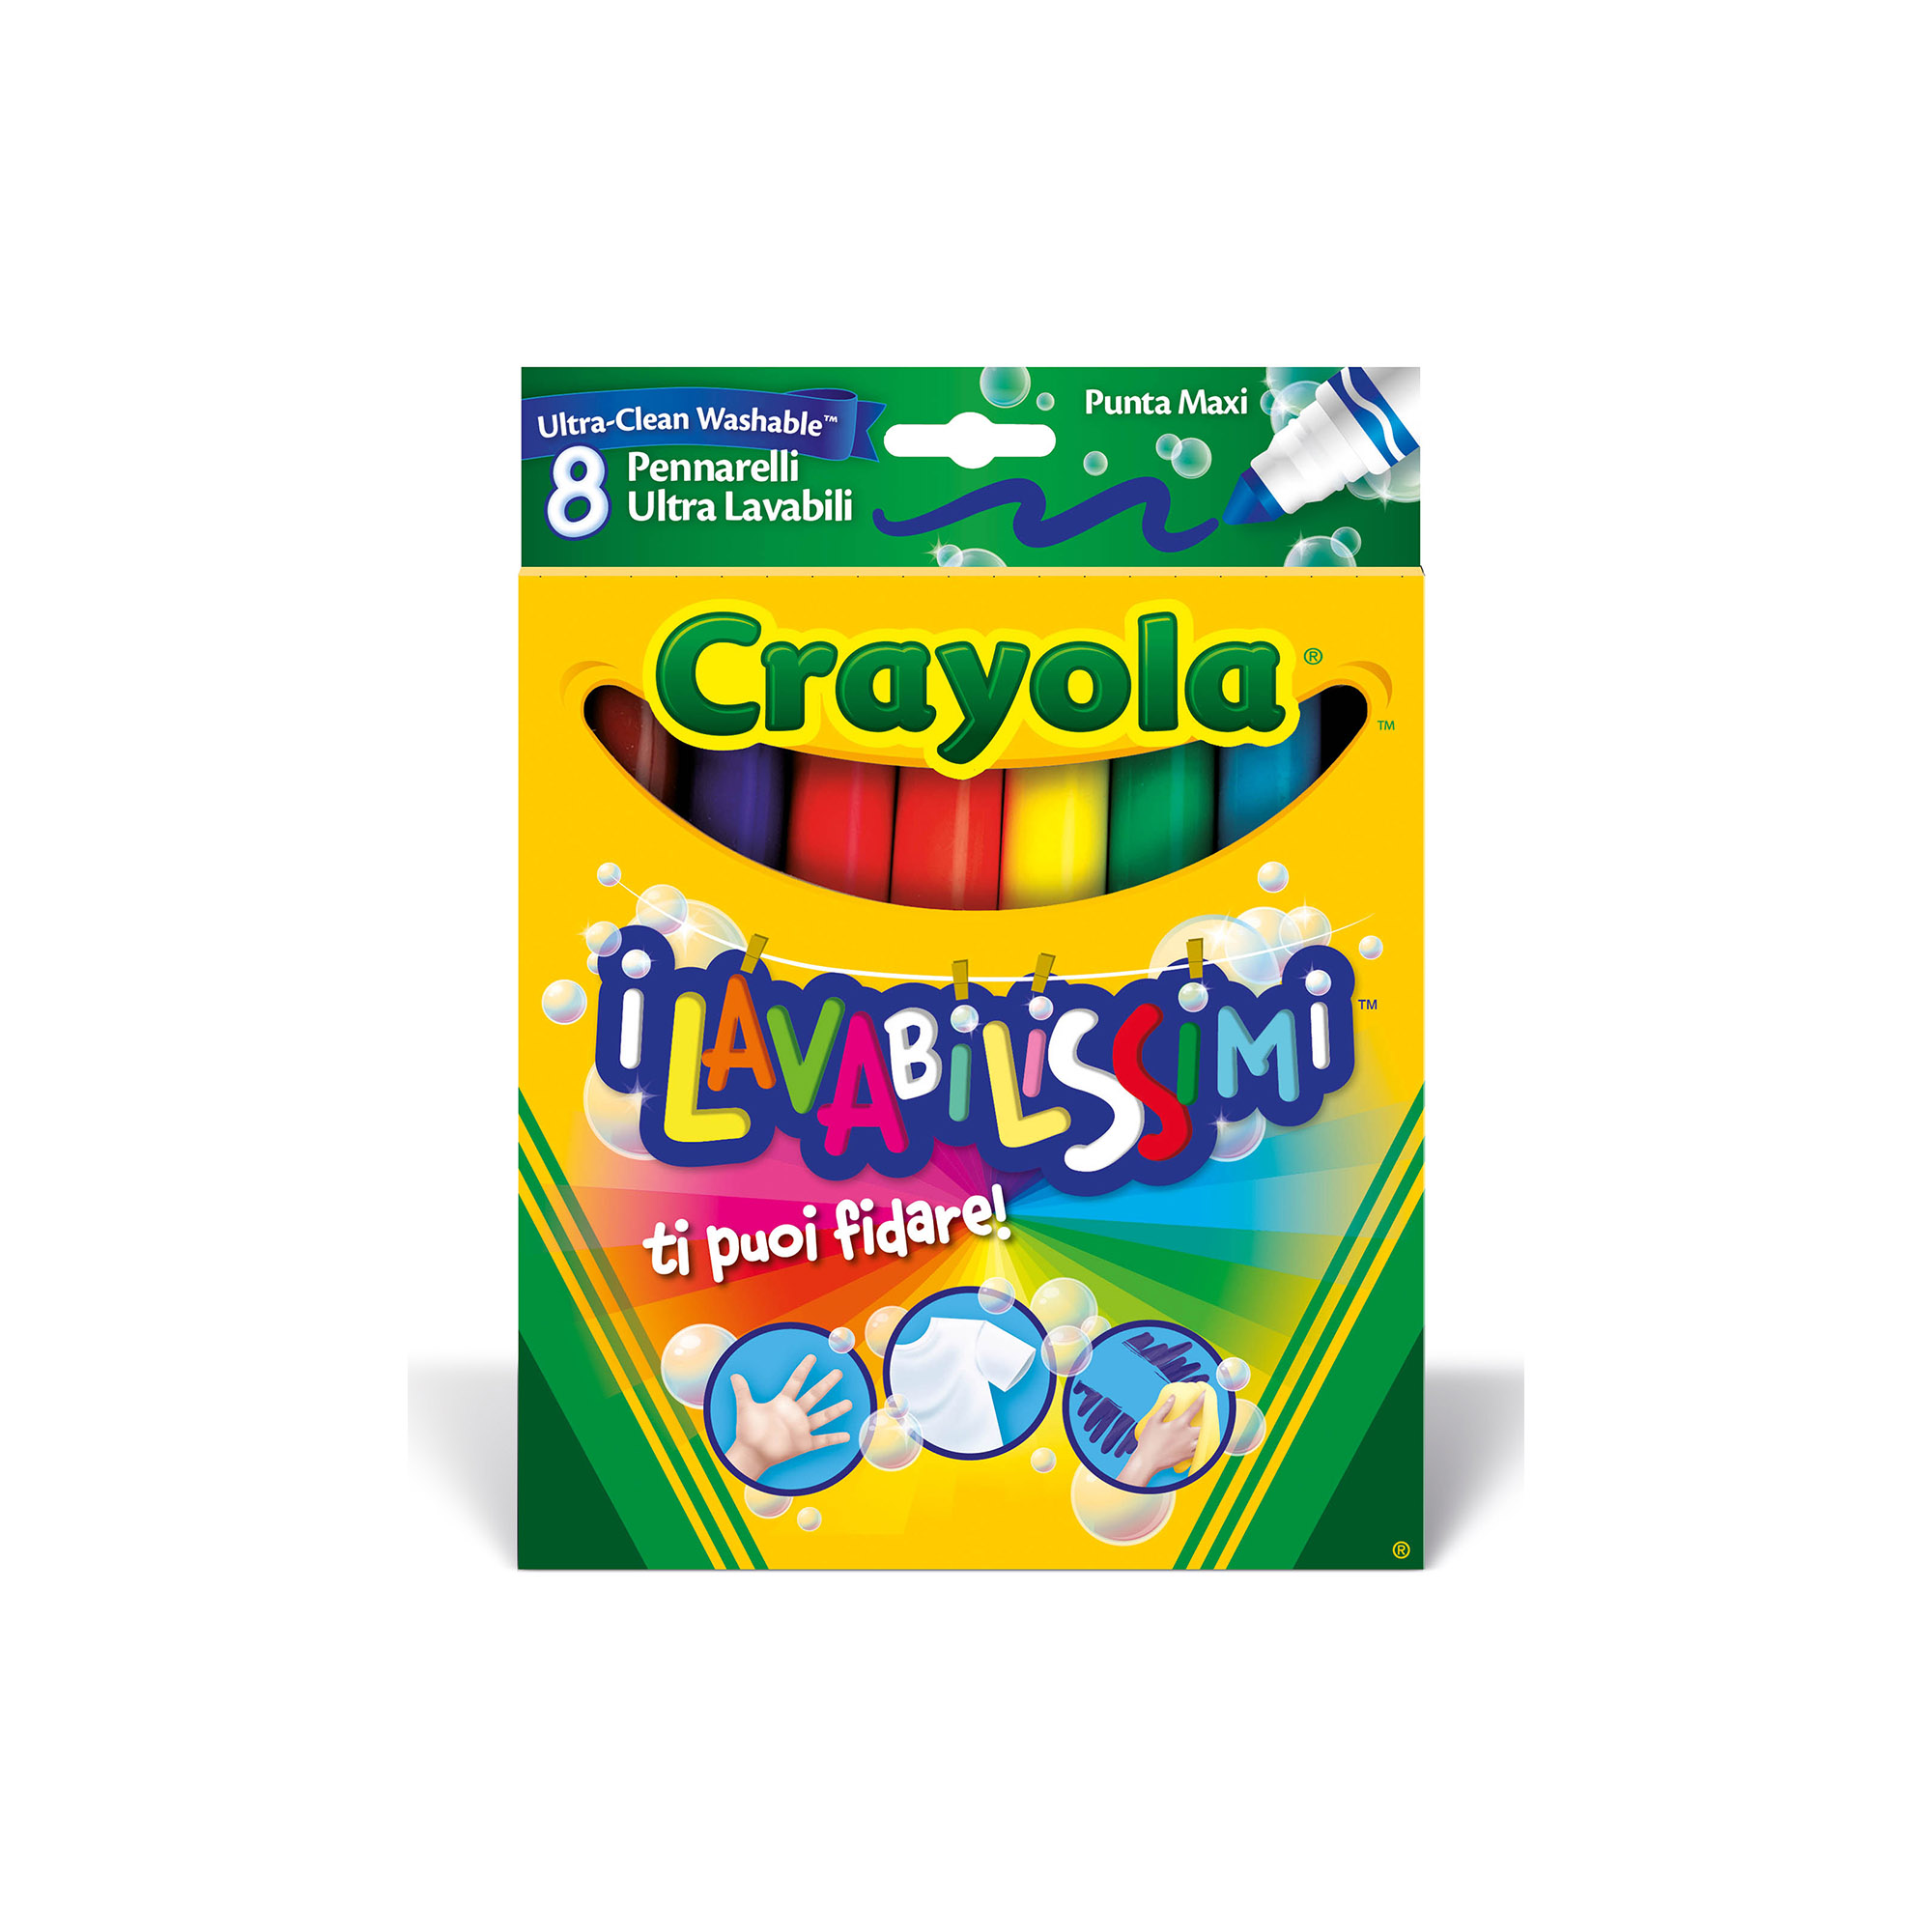 8 Pennarelli maxi punta i Lavabilissimi Crayola - Giocattoli Toys Center